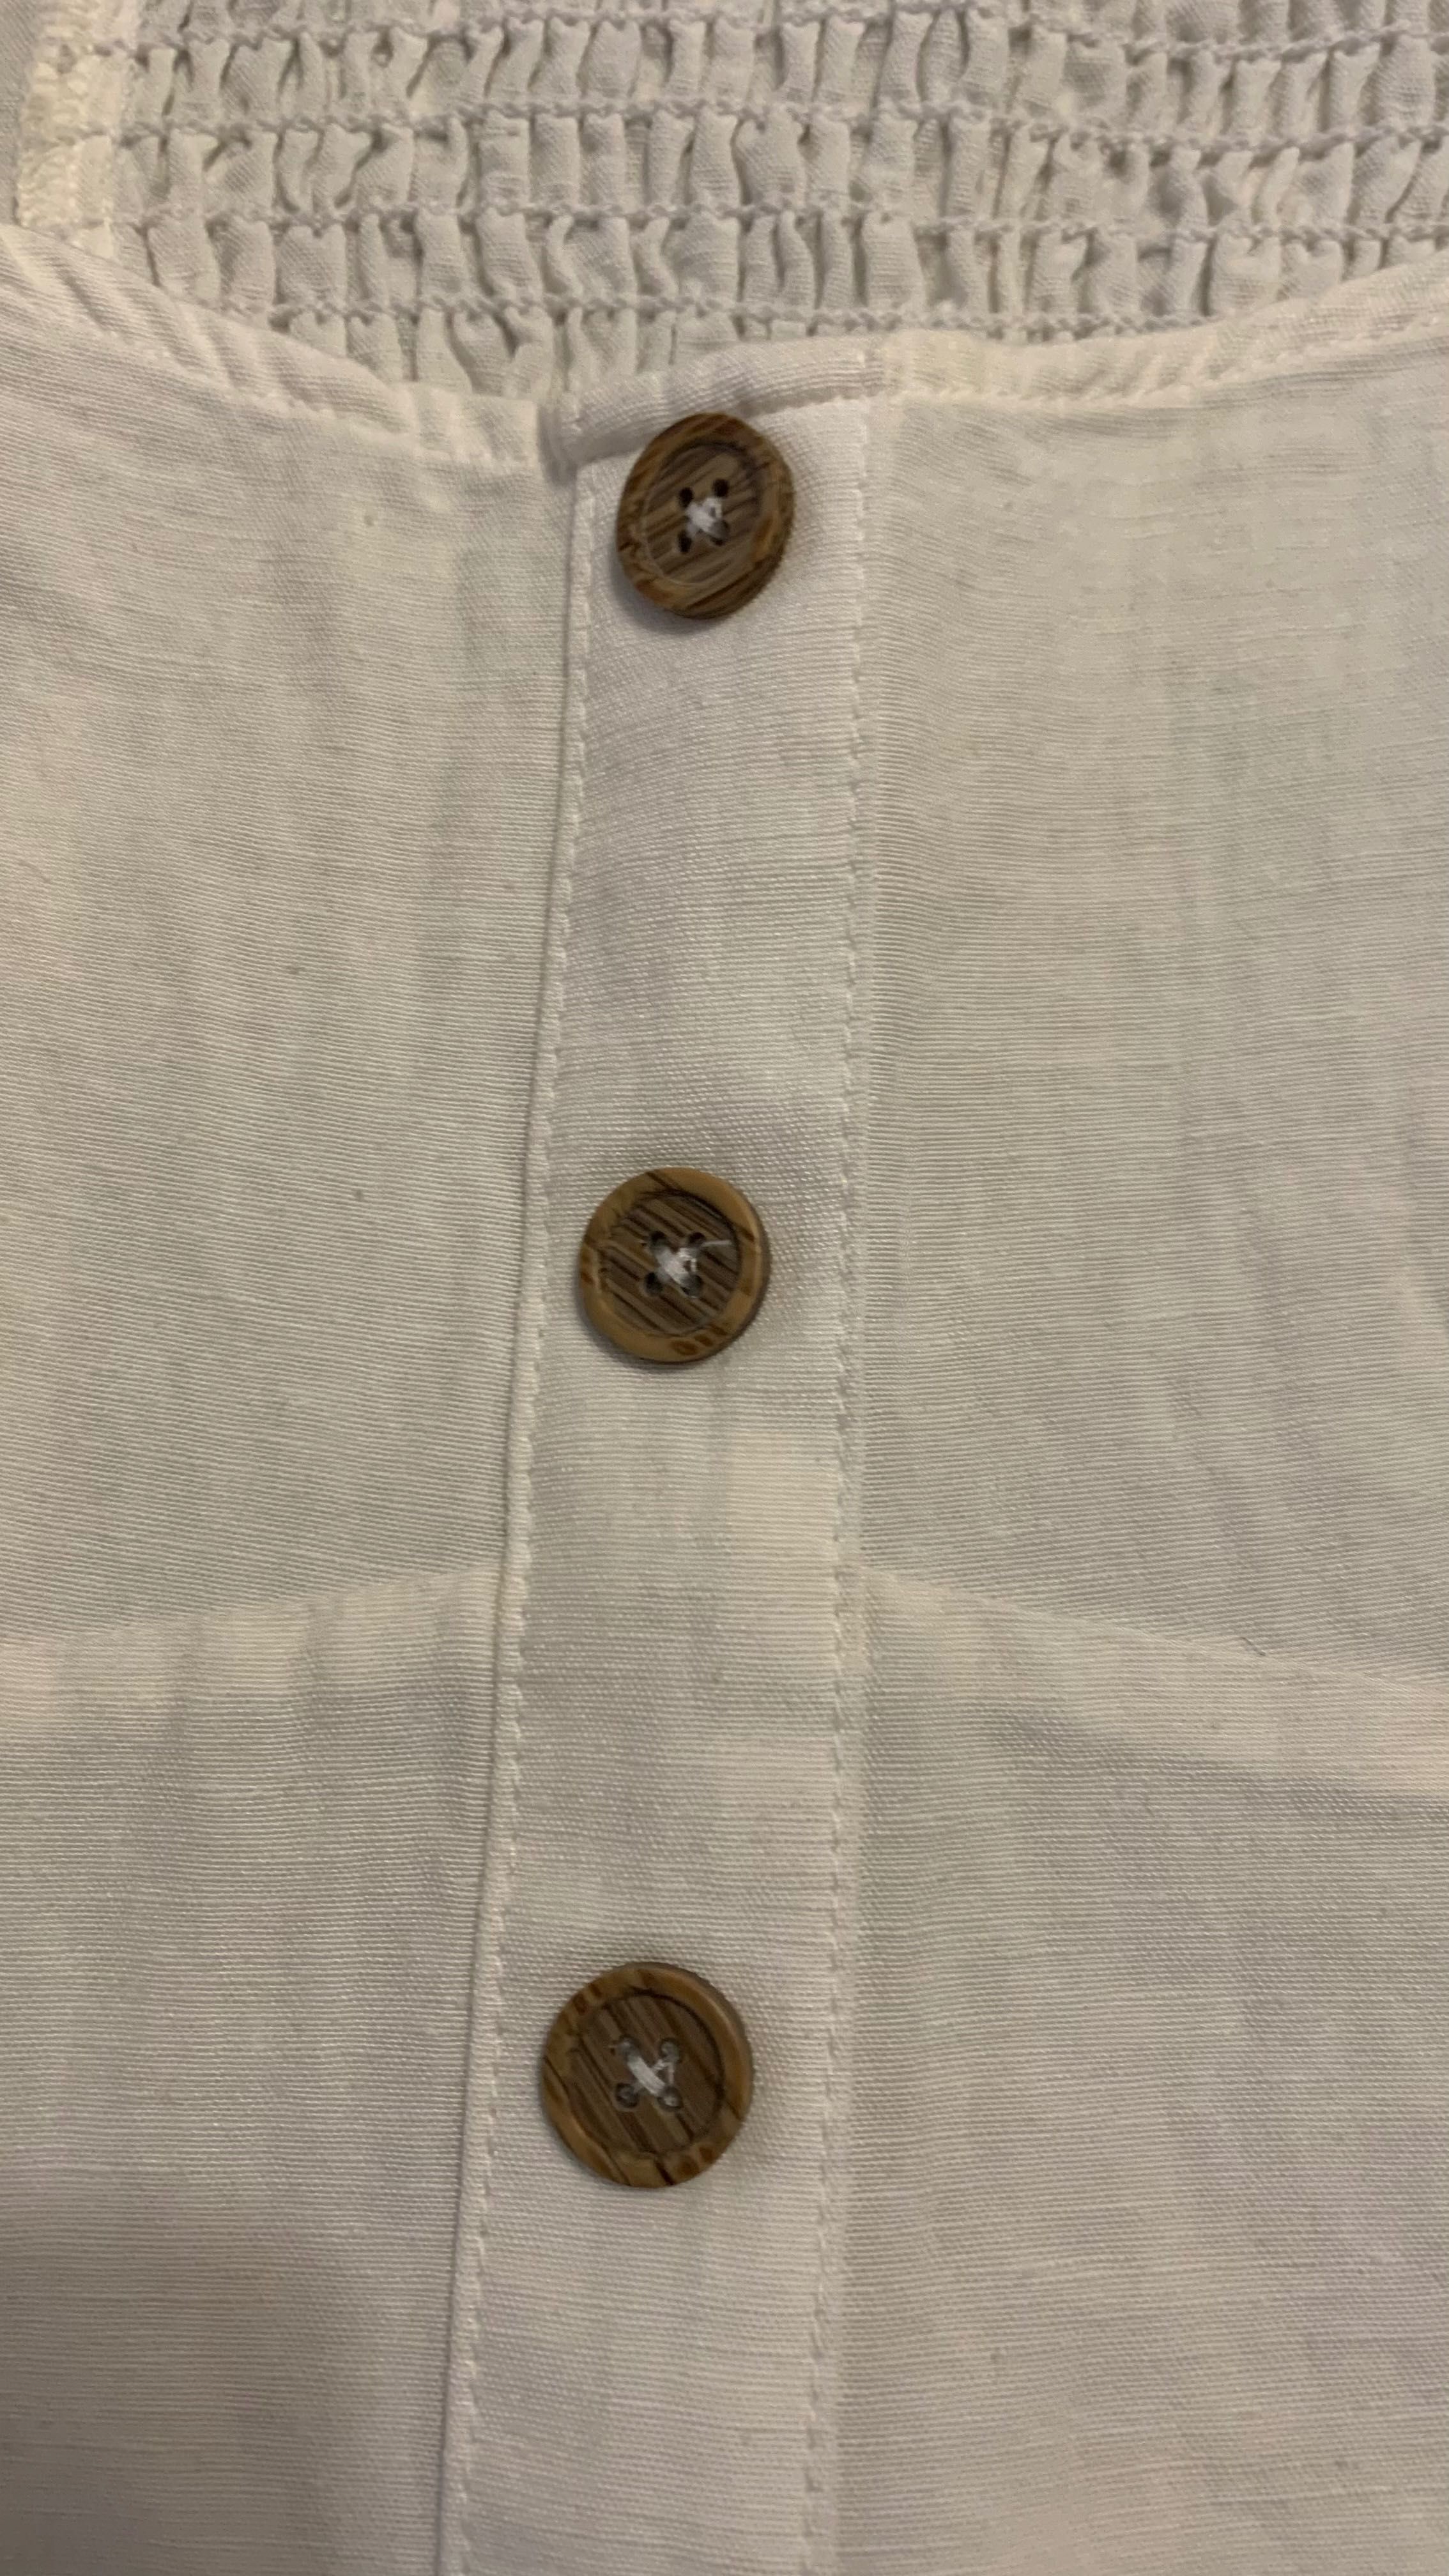 Blusa da Zara com folhos